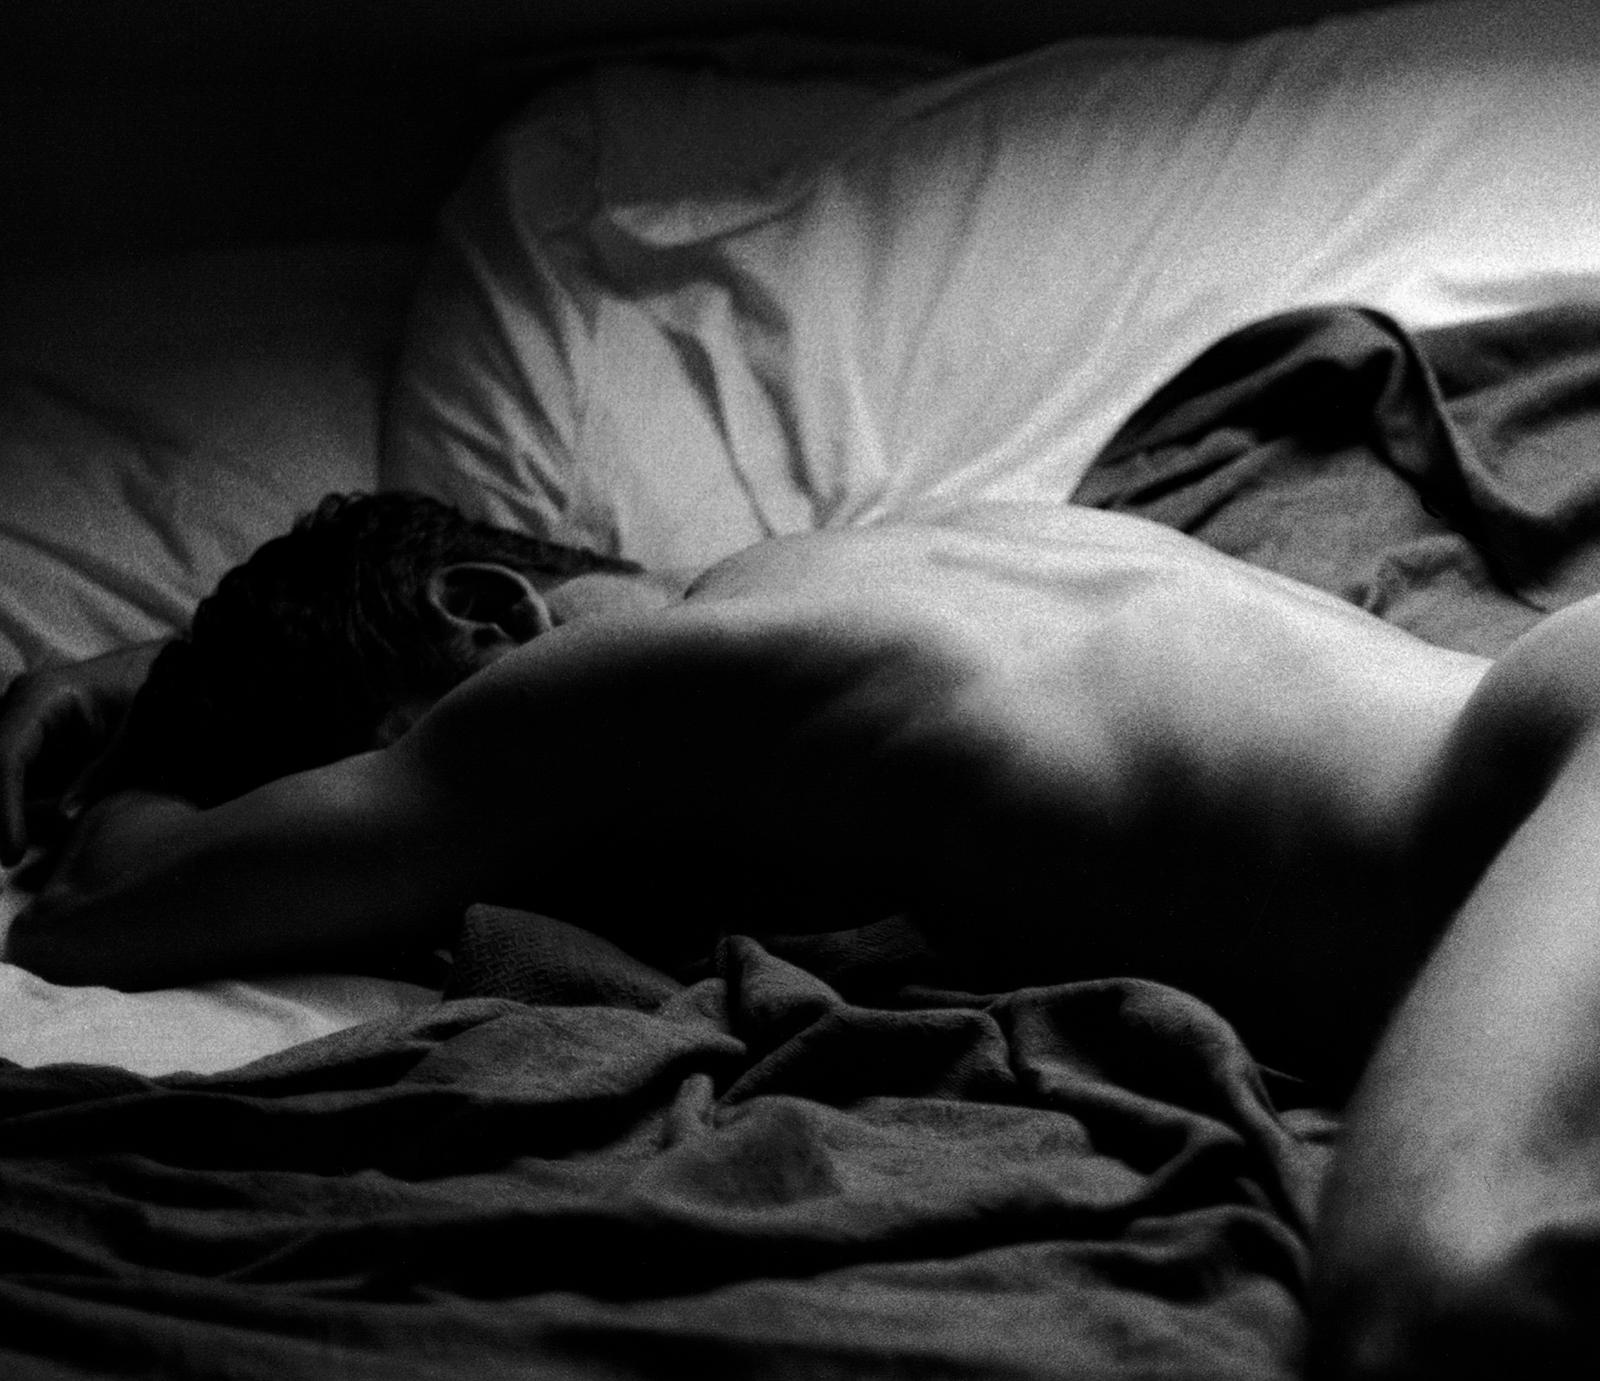 Signierter Aktdruck in limitierter Auflage, Schwarzweiß Contemporary, Mann auf Bett - Craig – Photograph von Ian Sanderson